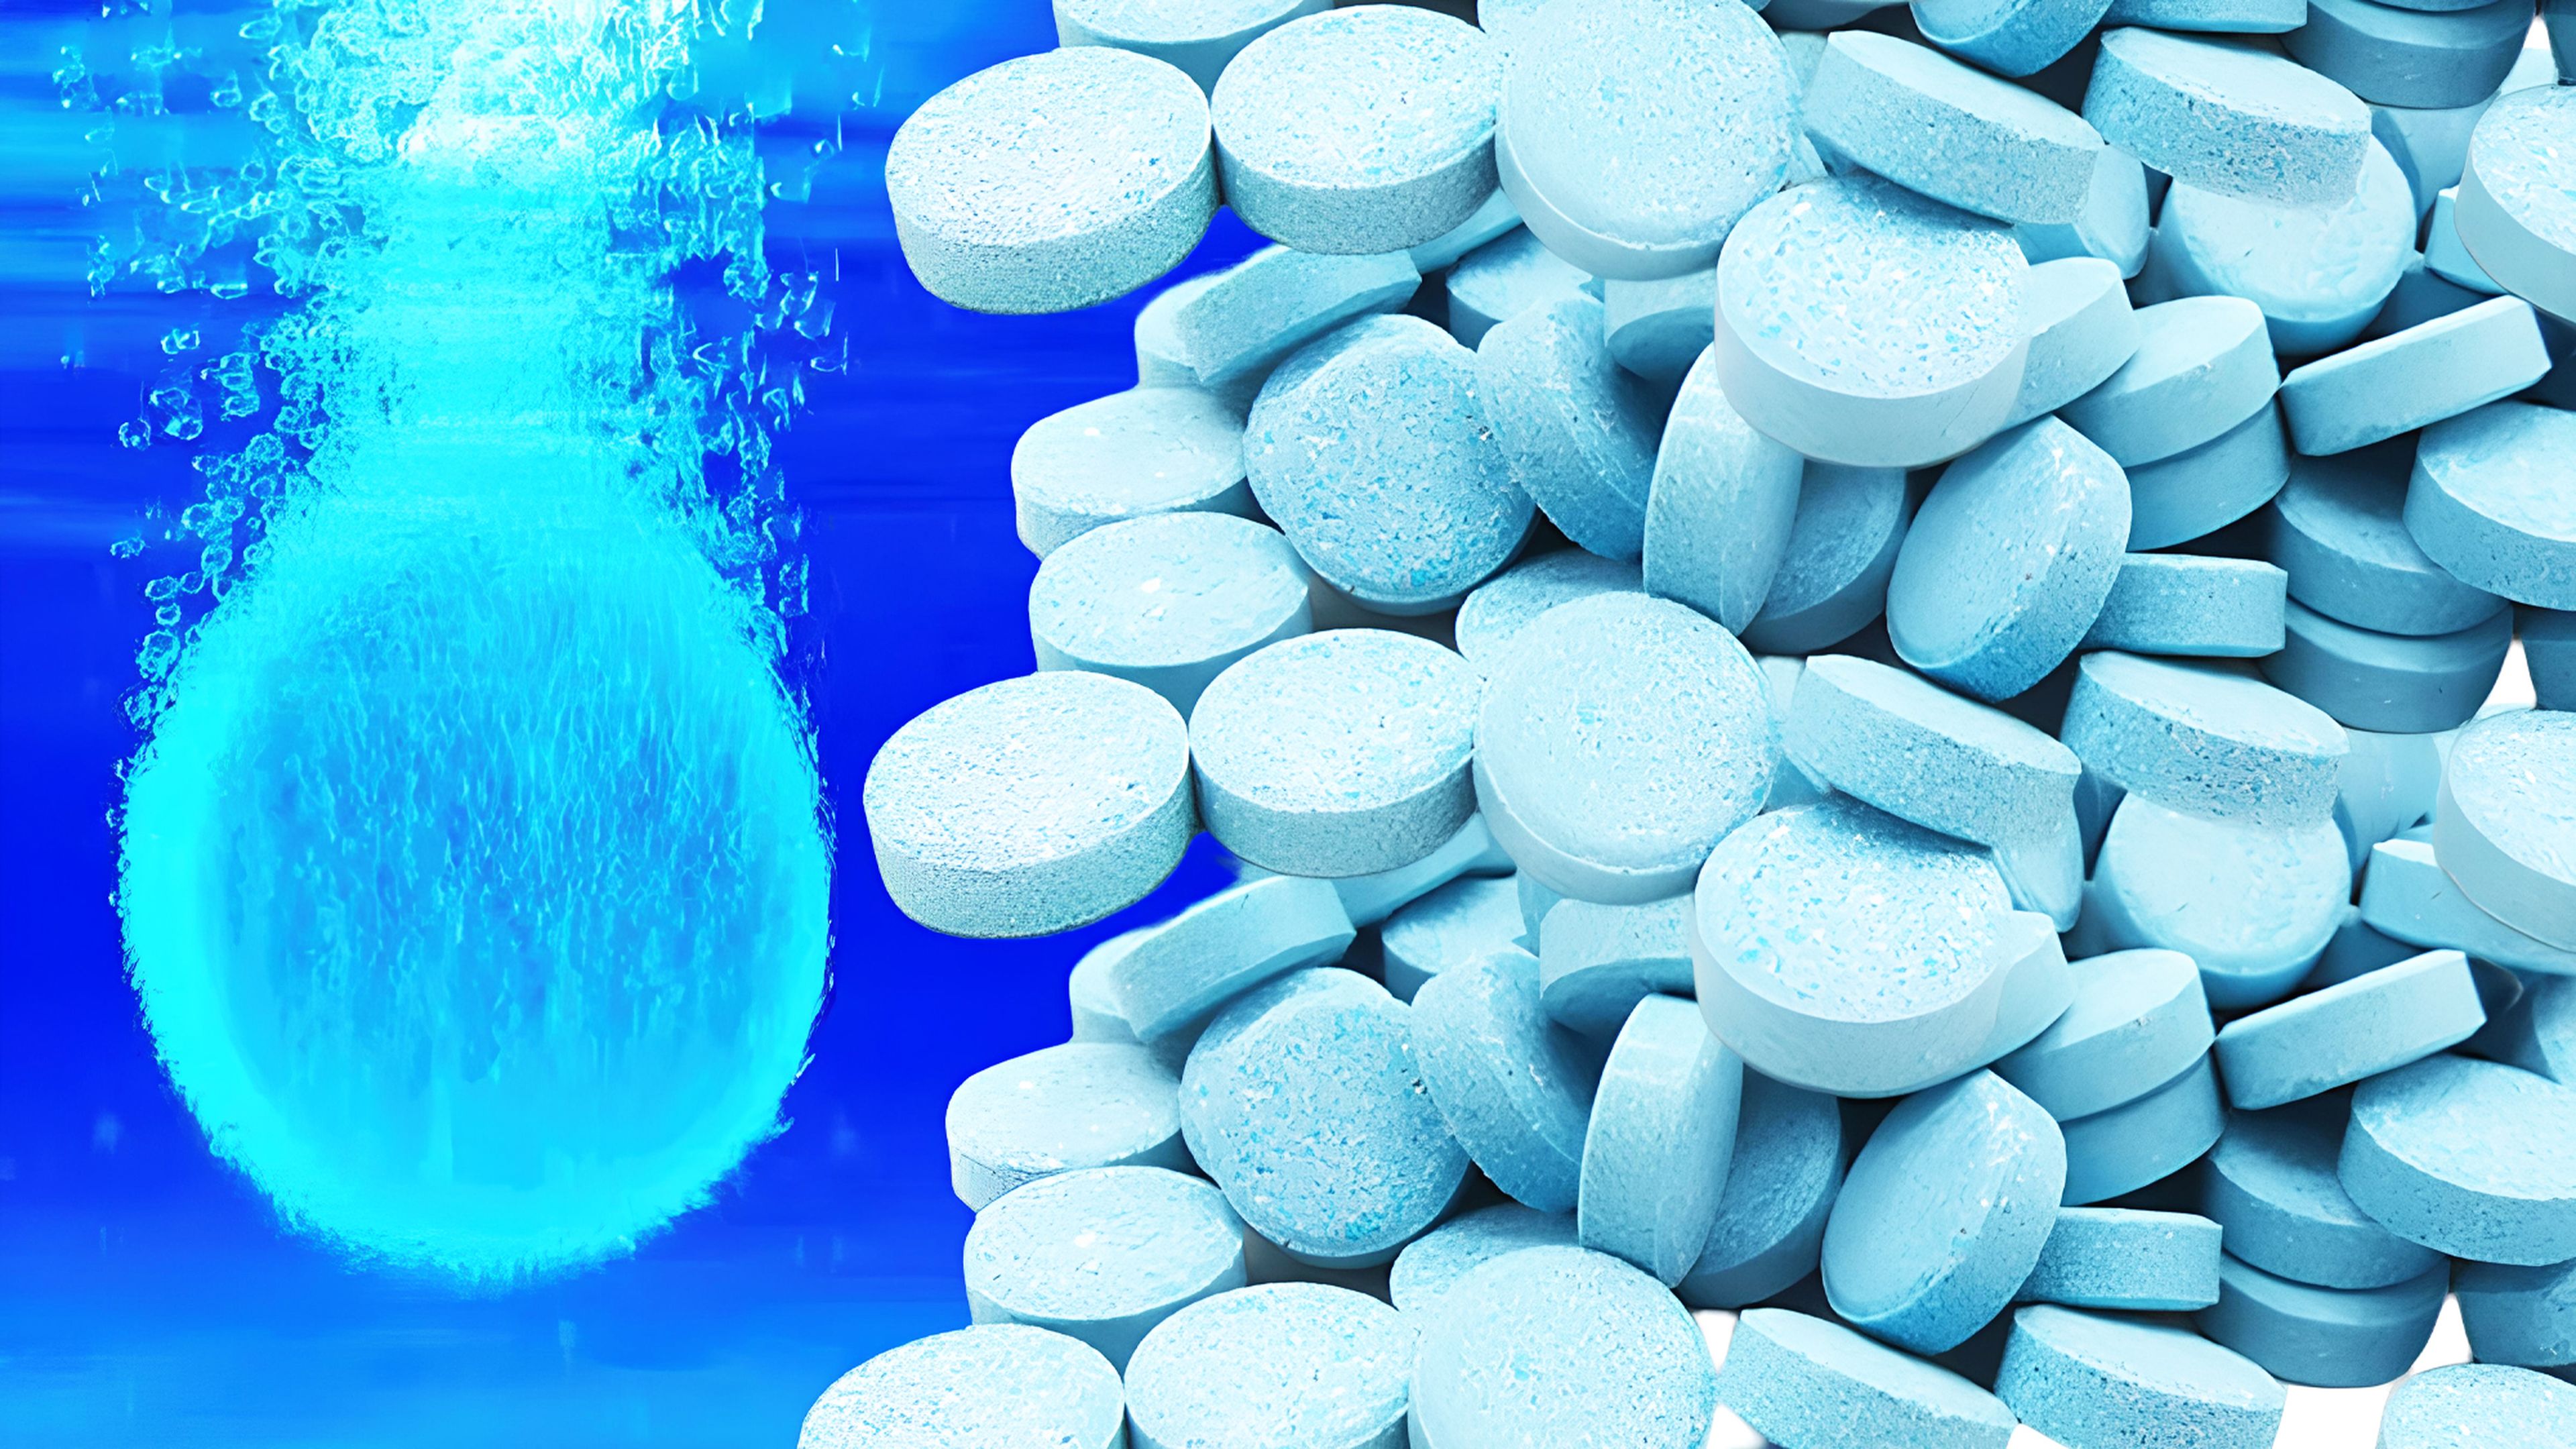 Limpiaparabrisas en pastilla: la última locura de AliExpress que puede  ahorrarte mucho dinero